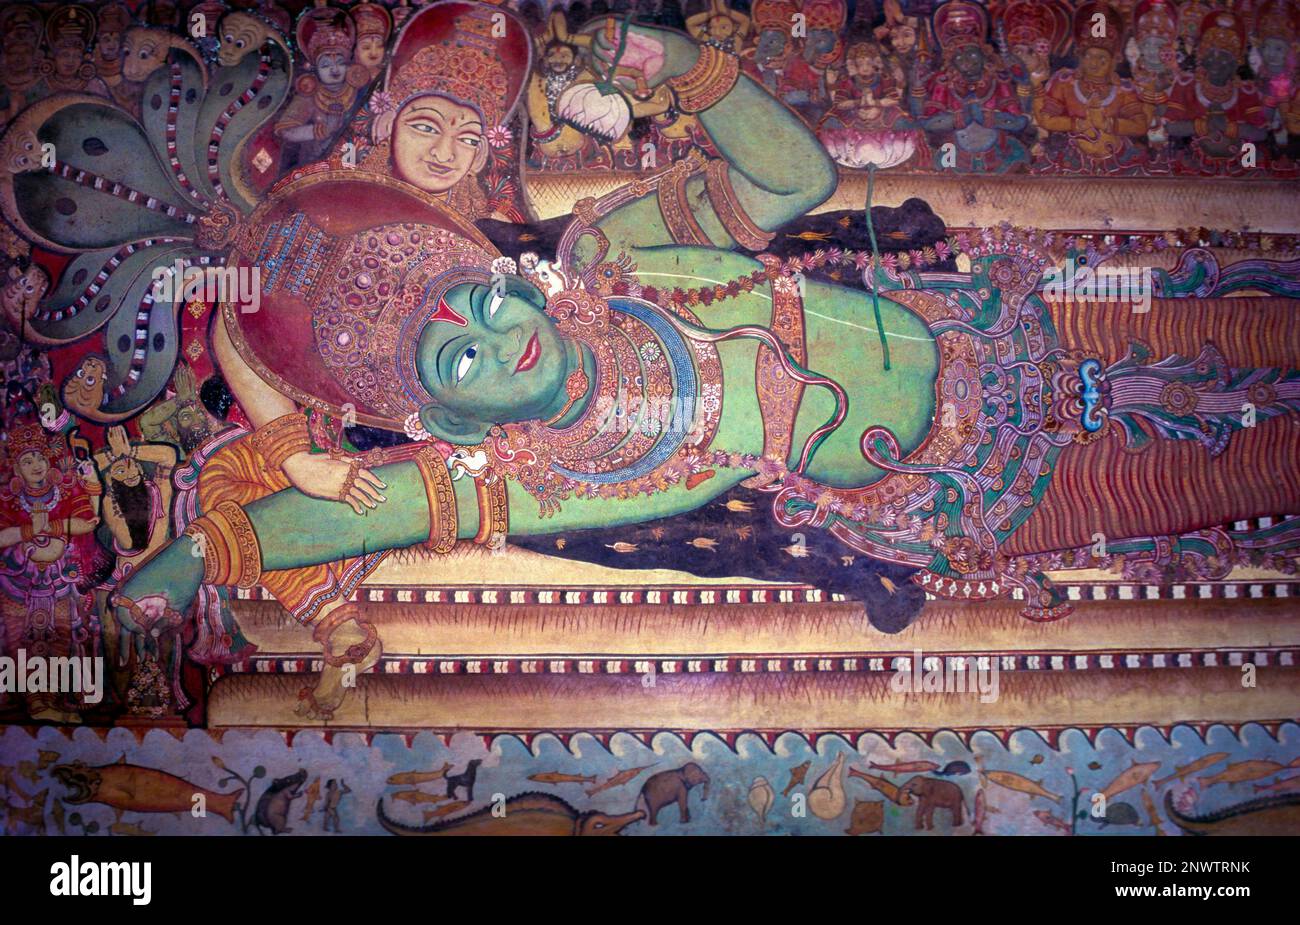 Vishnu dort sur les bobines du serpent céleste Anantha. Peintures murales dans le temple de Siva à Ettumanoor, Kerala, Inde, Asie Banque D'Images